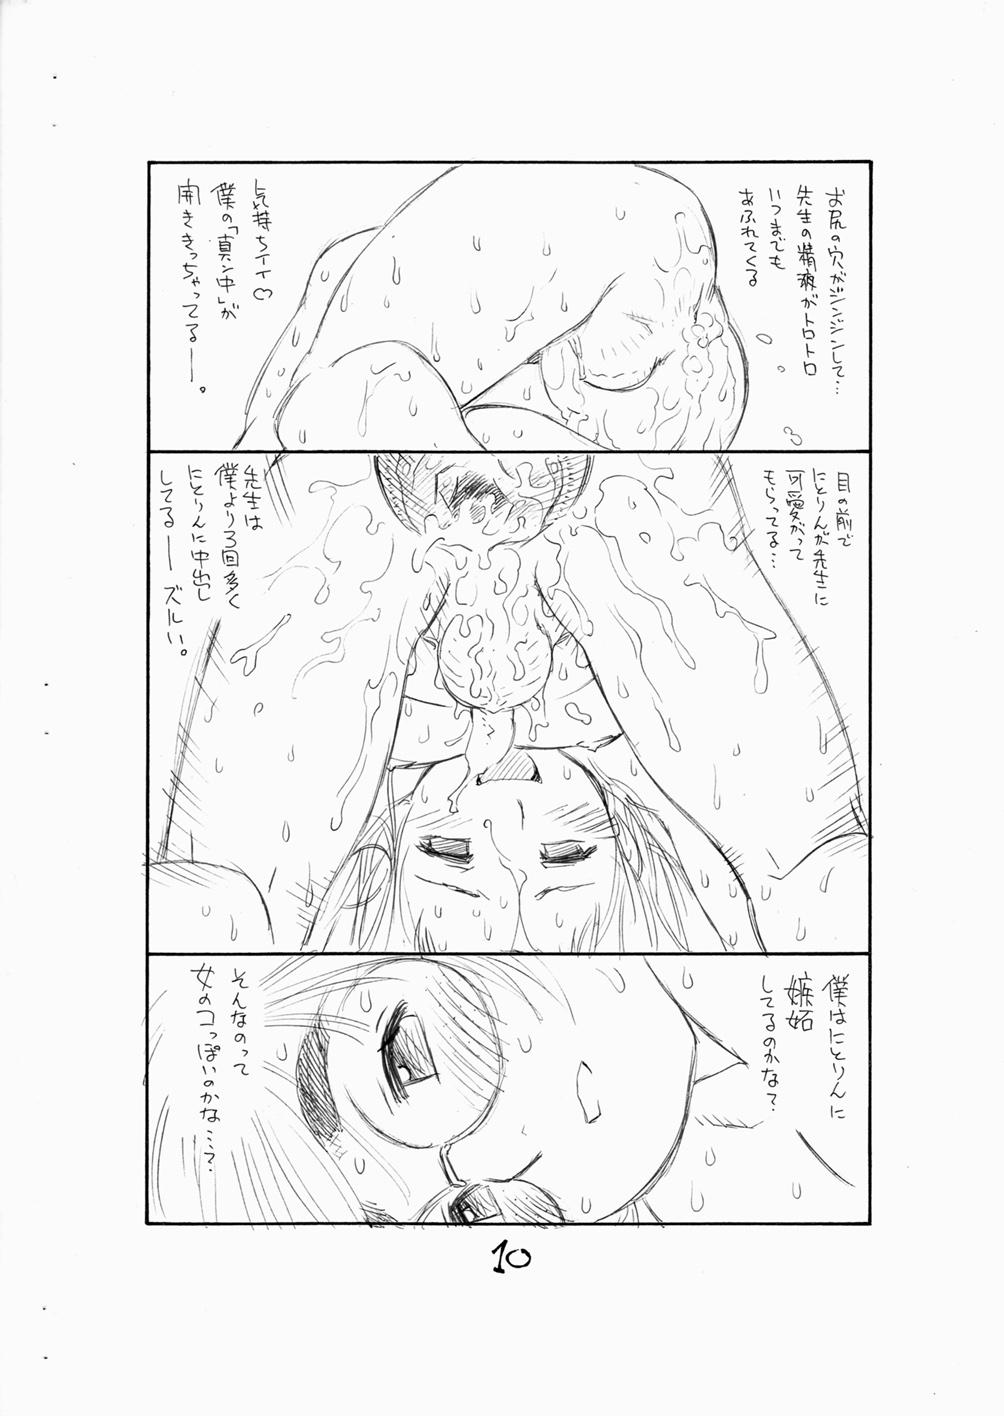 Africa Bokutachi Otokonoko 3 - Hourou musuko Girl Girl - Page 12